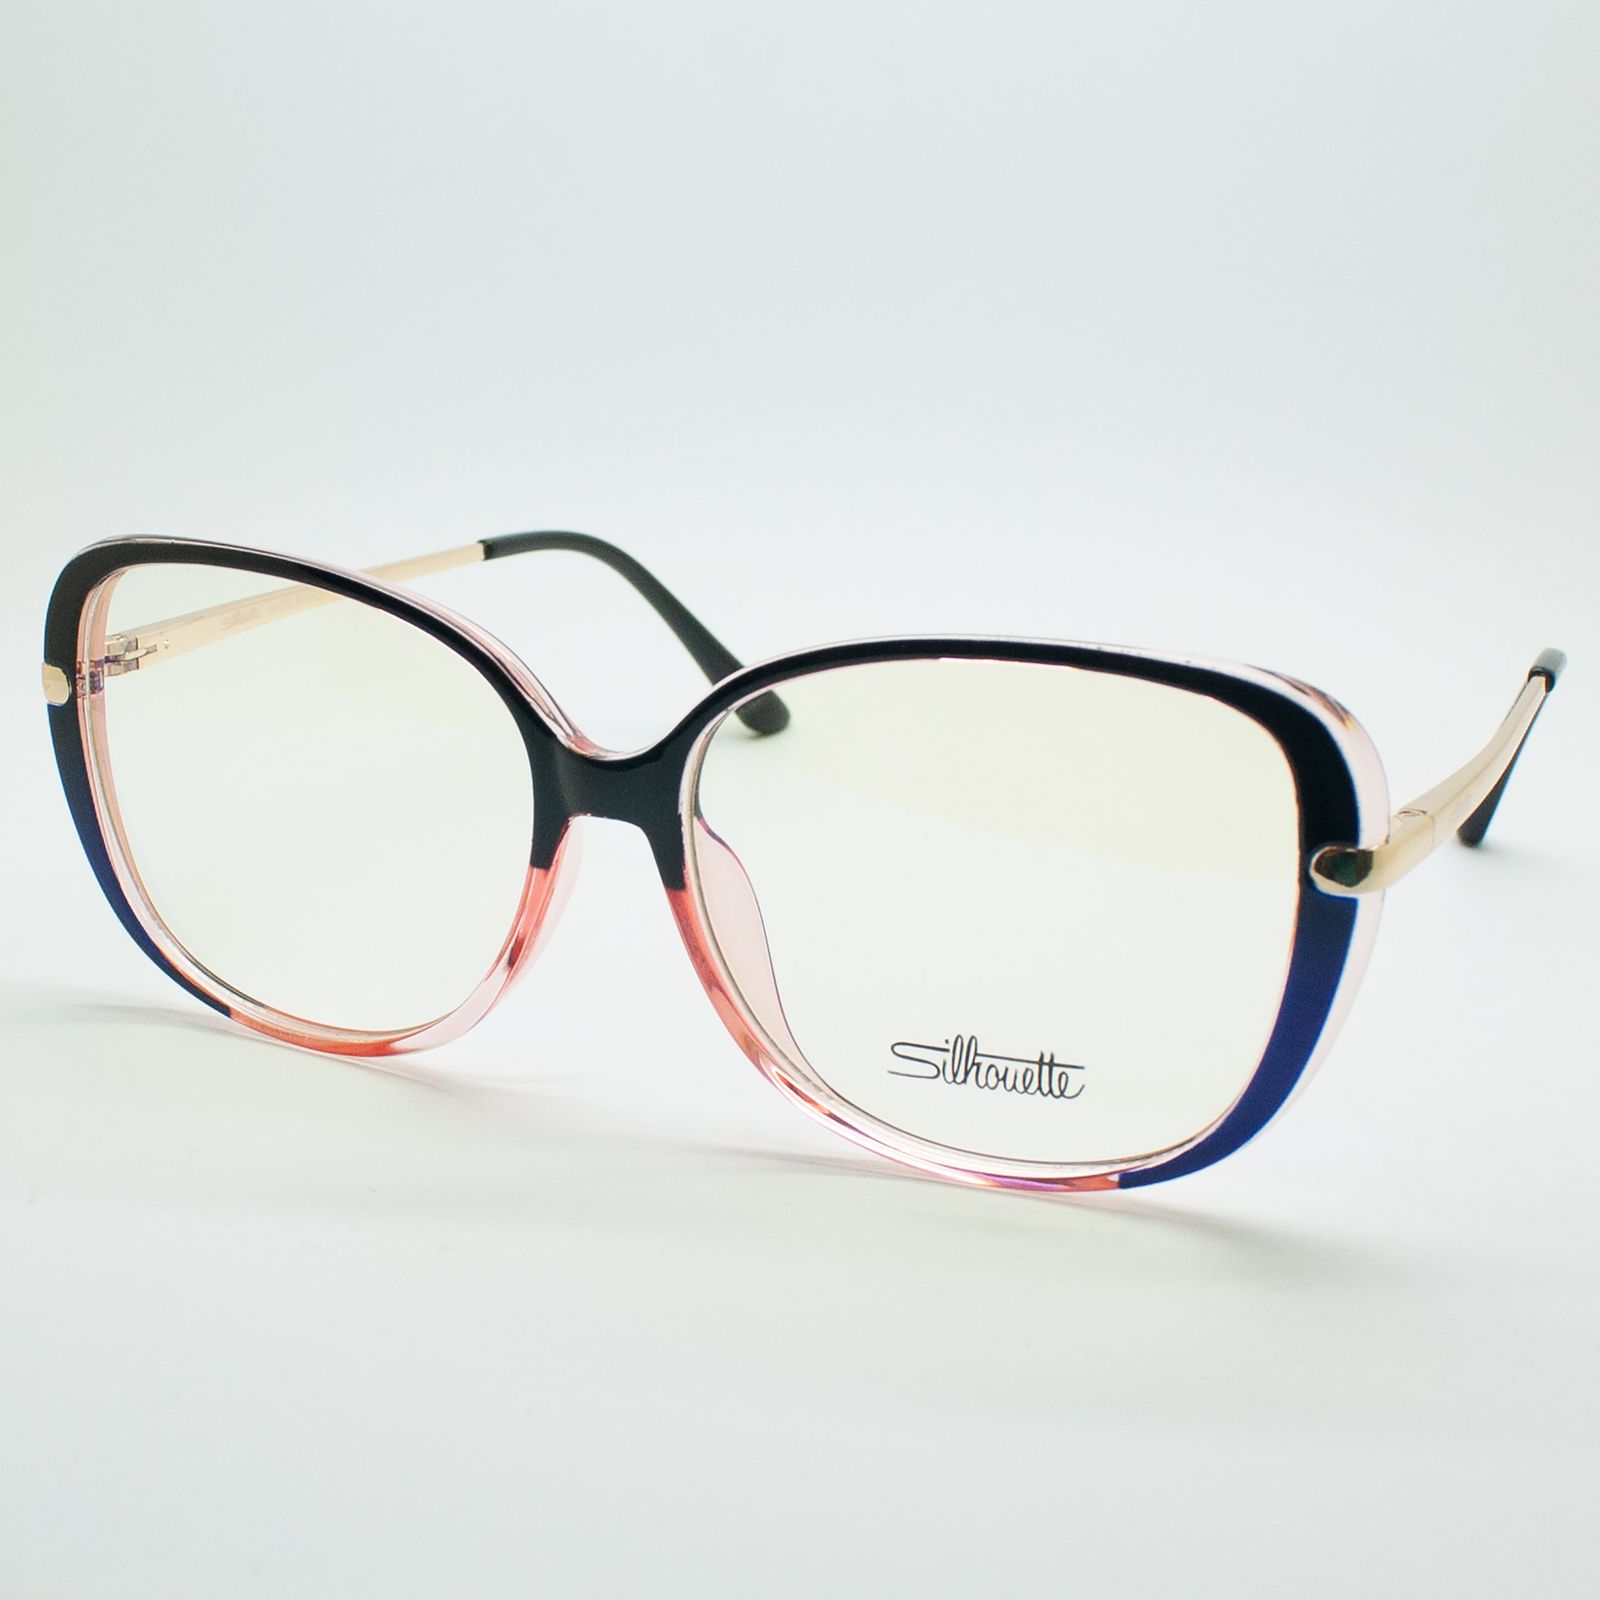 فریم عینک طبی سیلوئت مدل 93312 C1 G -  - 4